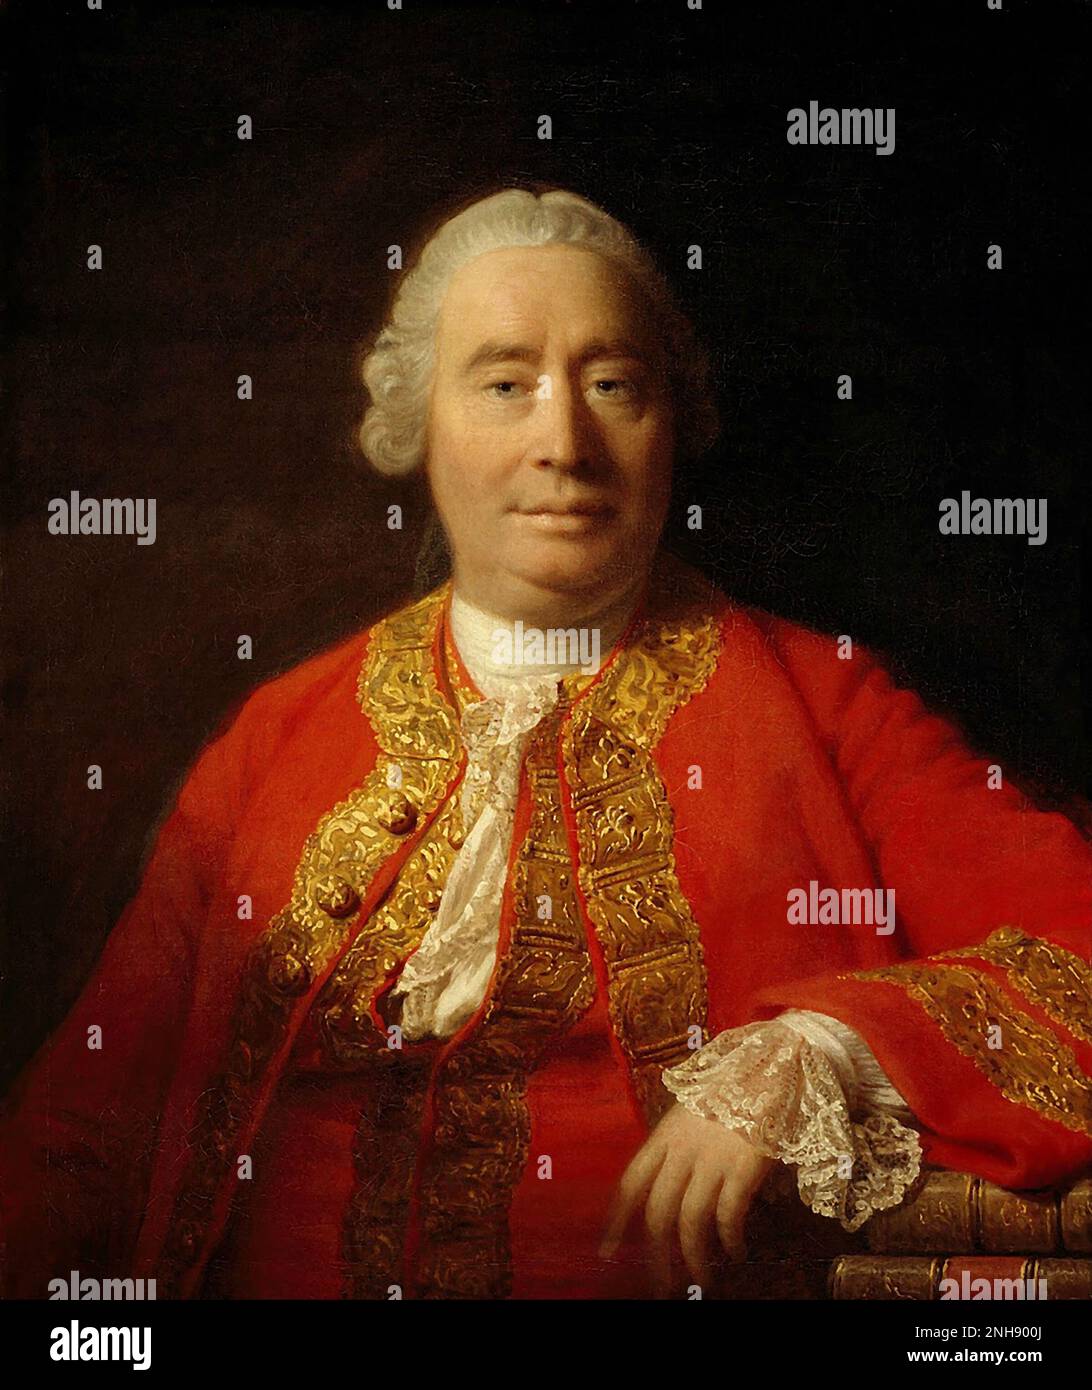 David Hume (1711-1776), schottischer Erleuchtungsphilosoph, Historiker und Ökonom, am besten bekannt für sein äußerst einflussreiches System des philosophischen Empiriismus, Skepsis und Naturalismus. Gemälde von Allan Ramsay (1713-1784), 1766. Stockfoto